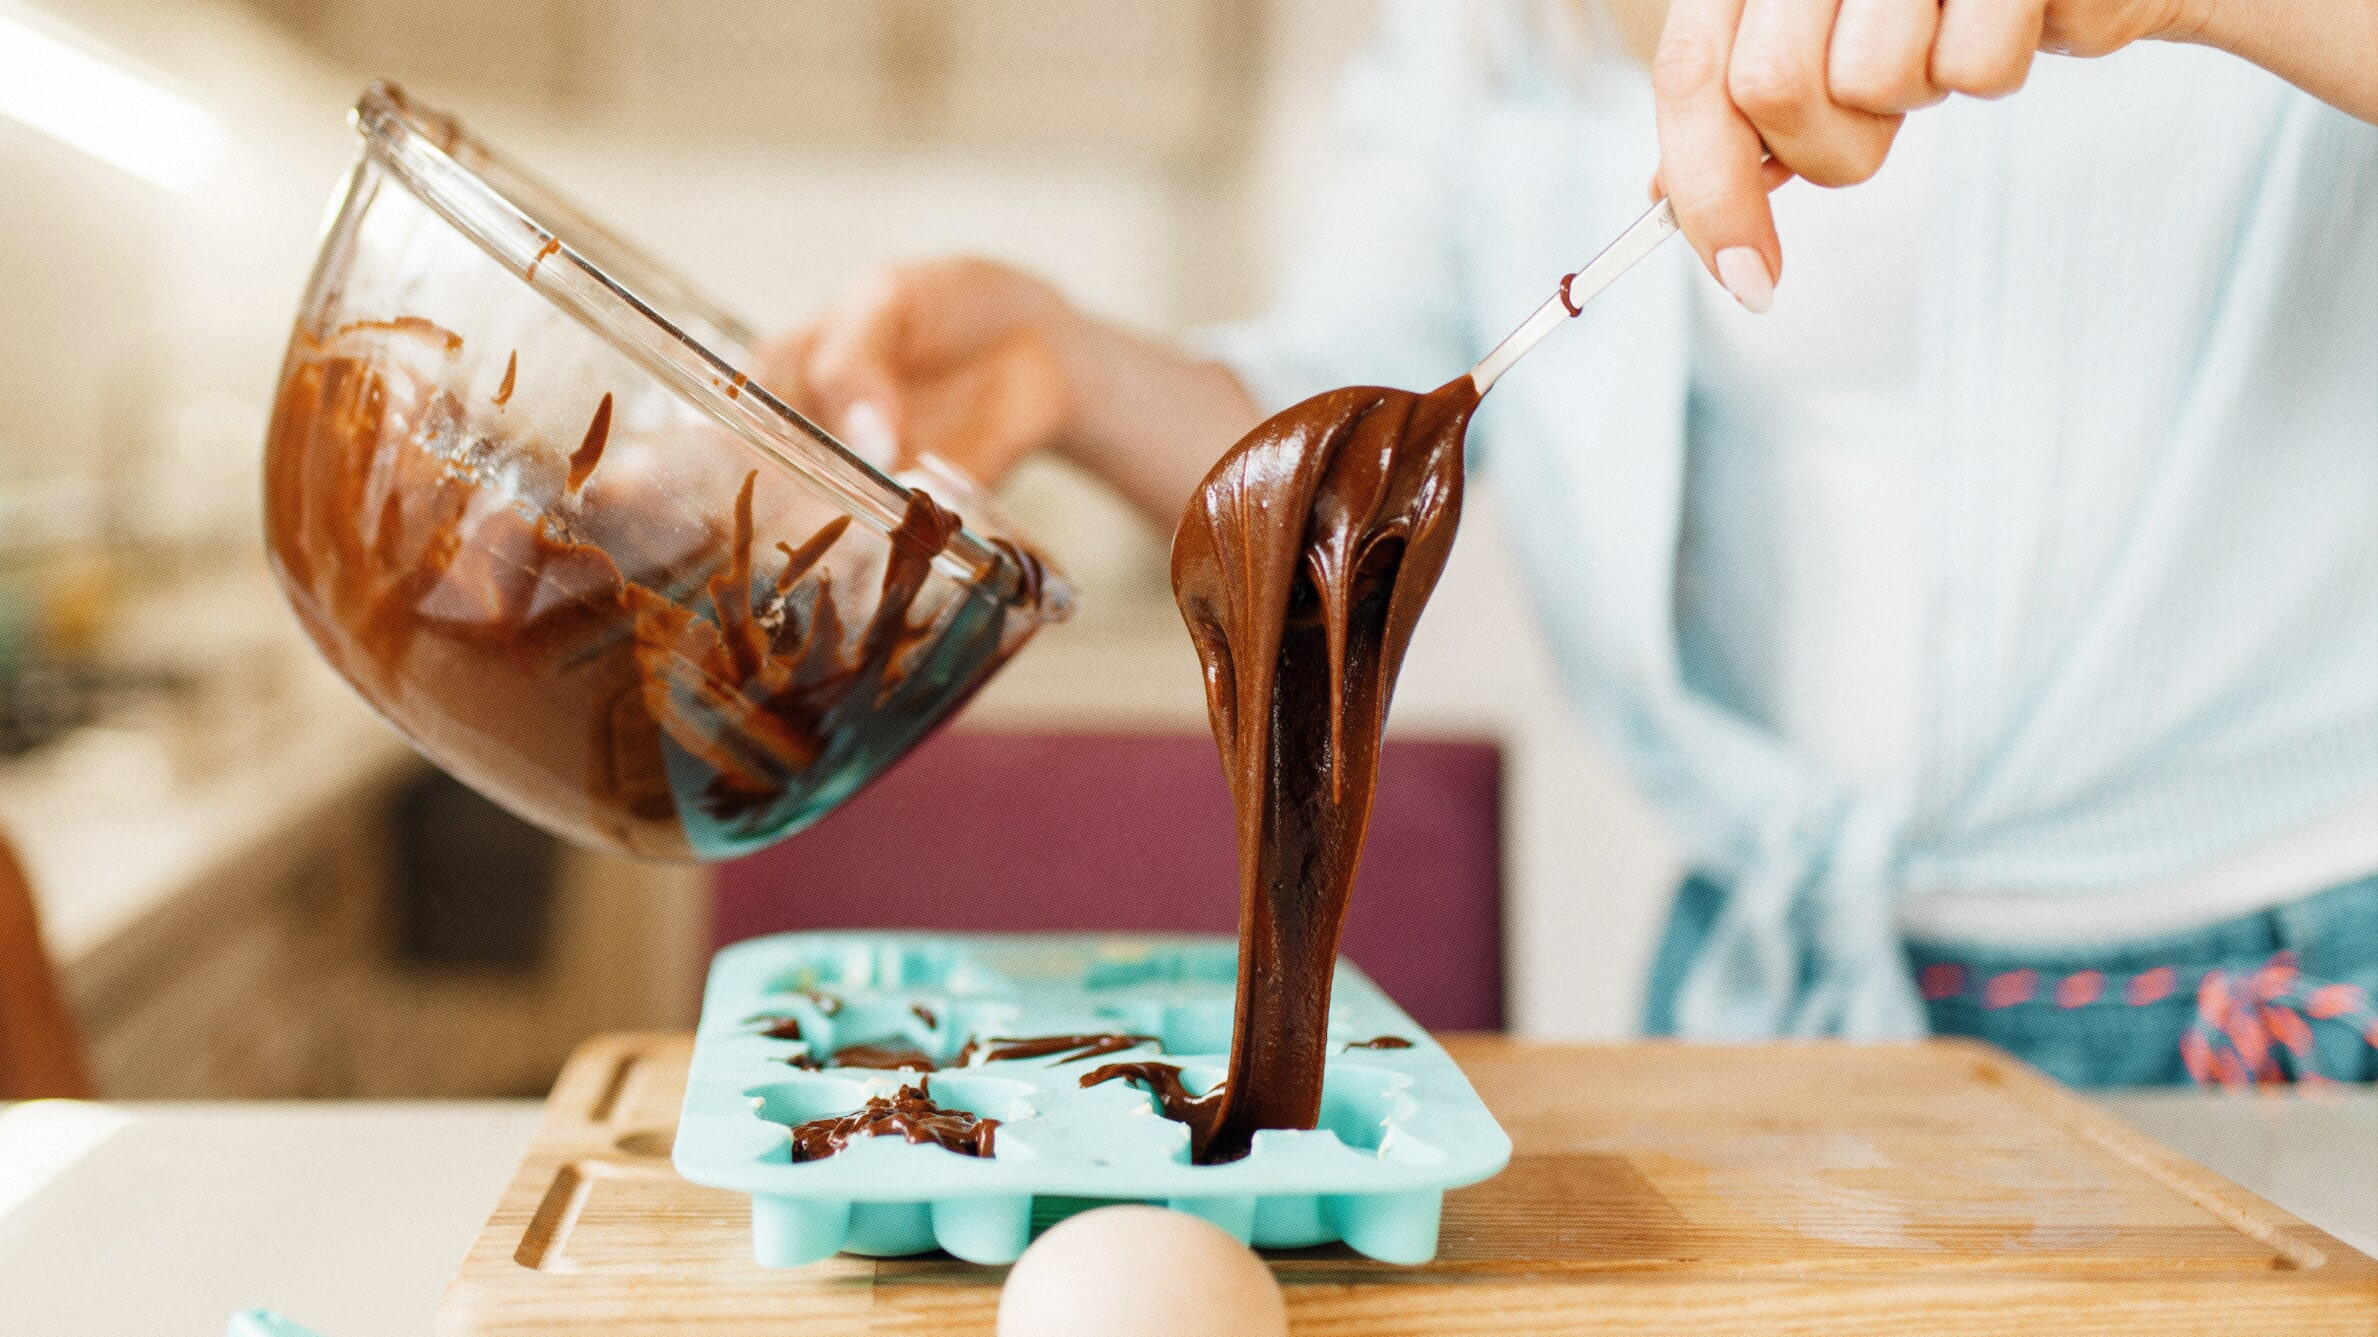 Домашний шоколад - рецепты с фото. Как сделать шоколад в домашних условиях?